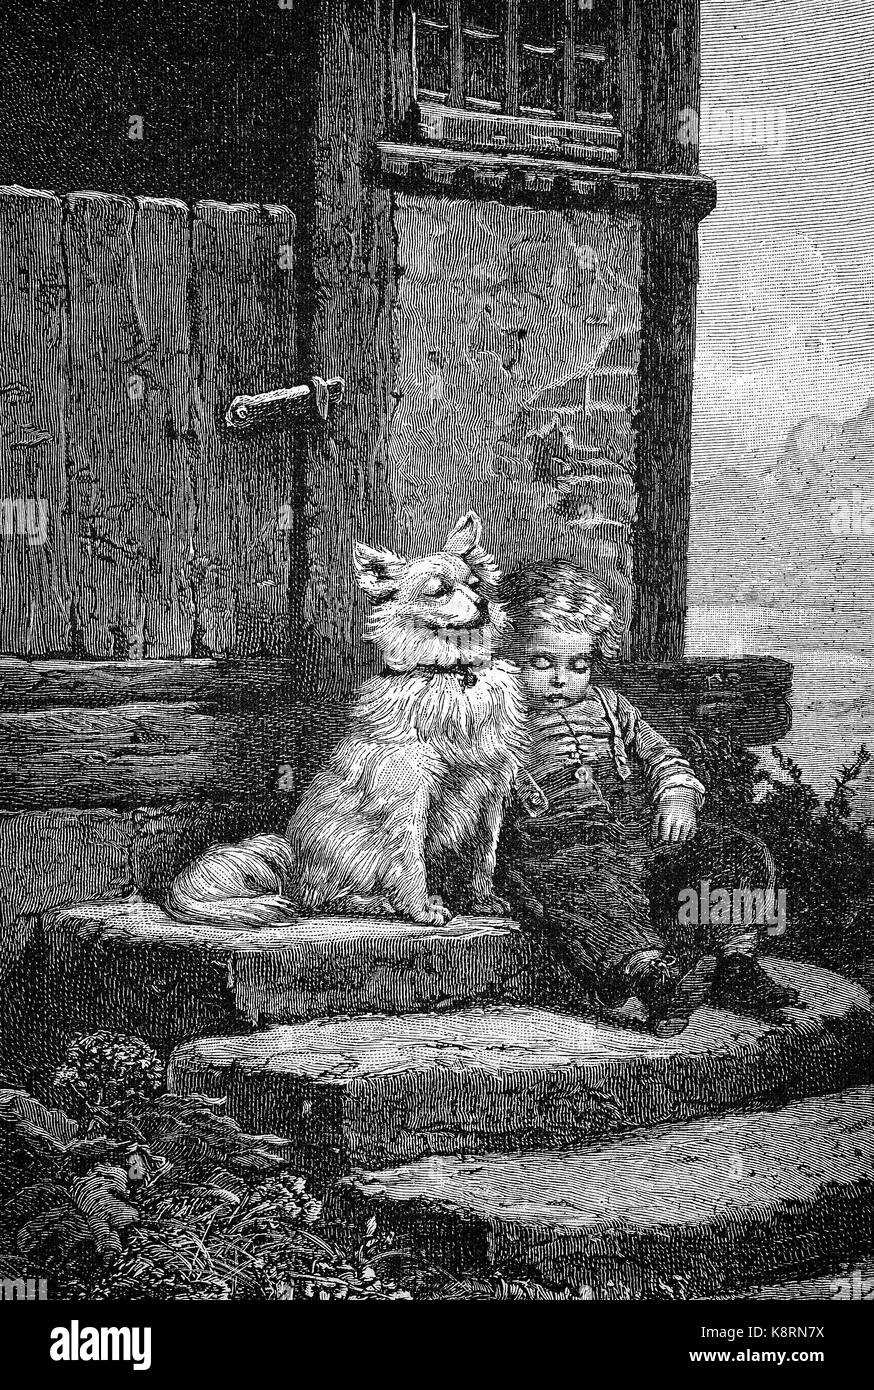 Le gardien, le chien garde le petit garçon, qui s'est endormie sur l'escalier, Der Wächter, Hund bewacht den kleinen Jungen der auf der Treppe eingeschlafen ist, amélioration numérique reproduction d'une gravure sur bois, publié dans le 19e siècle Banque D'Images